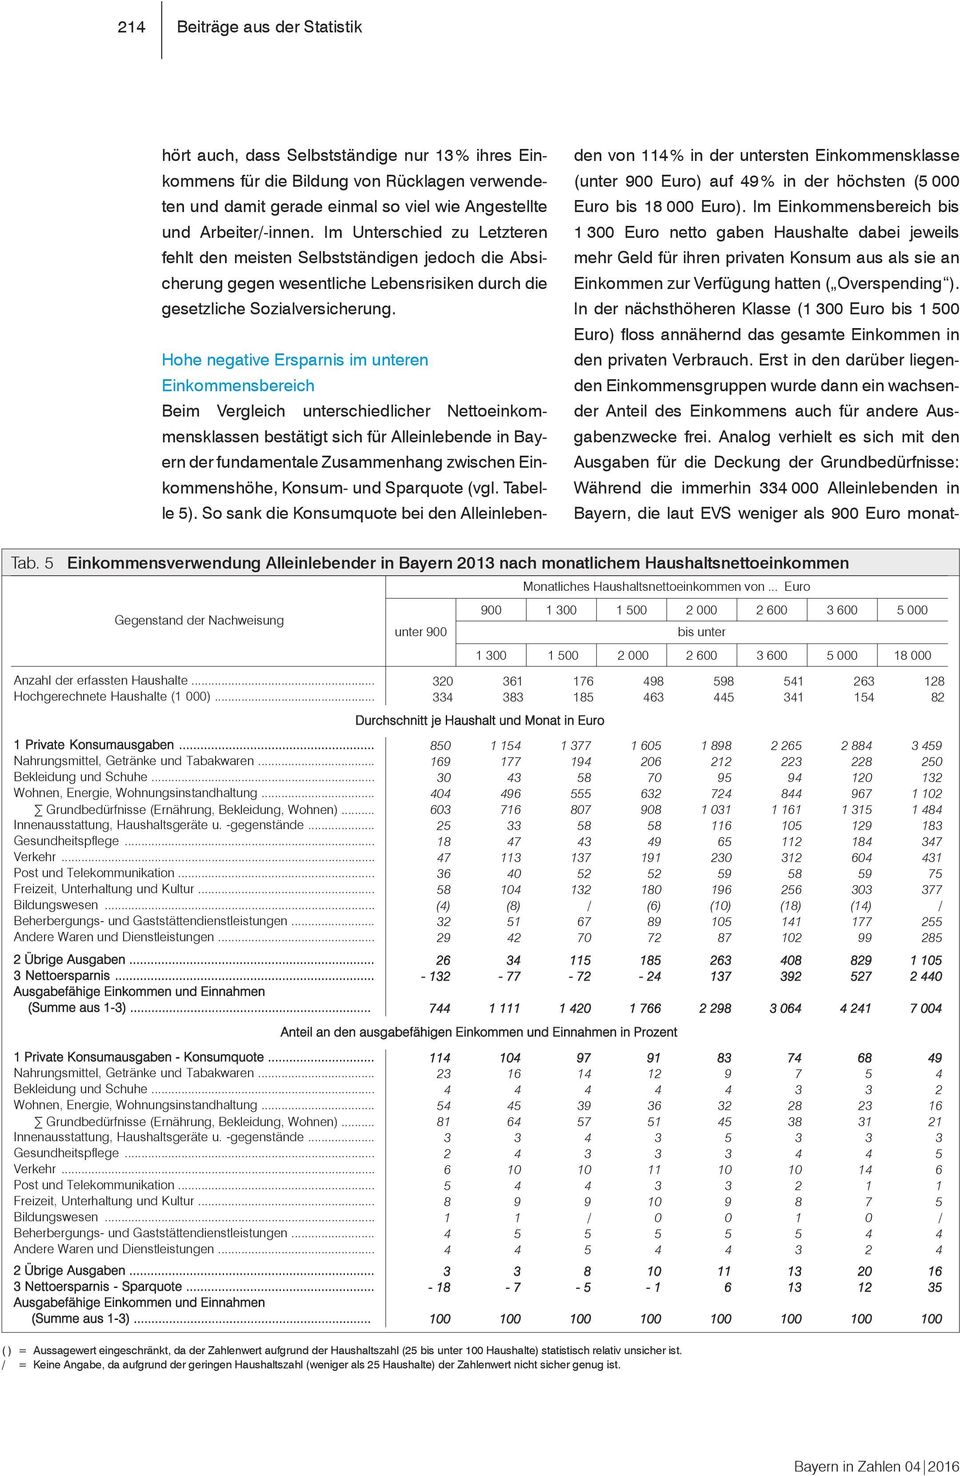 Hohe negative Ersparnis im unteren Einkommensbereich Tabelle 5: Einkommensverwendung Alleinlebender in Bayern 1 nach monatlichem Haushaltsnettoeinkommen Beim Vergleich unterschiedlicher